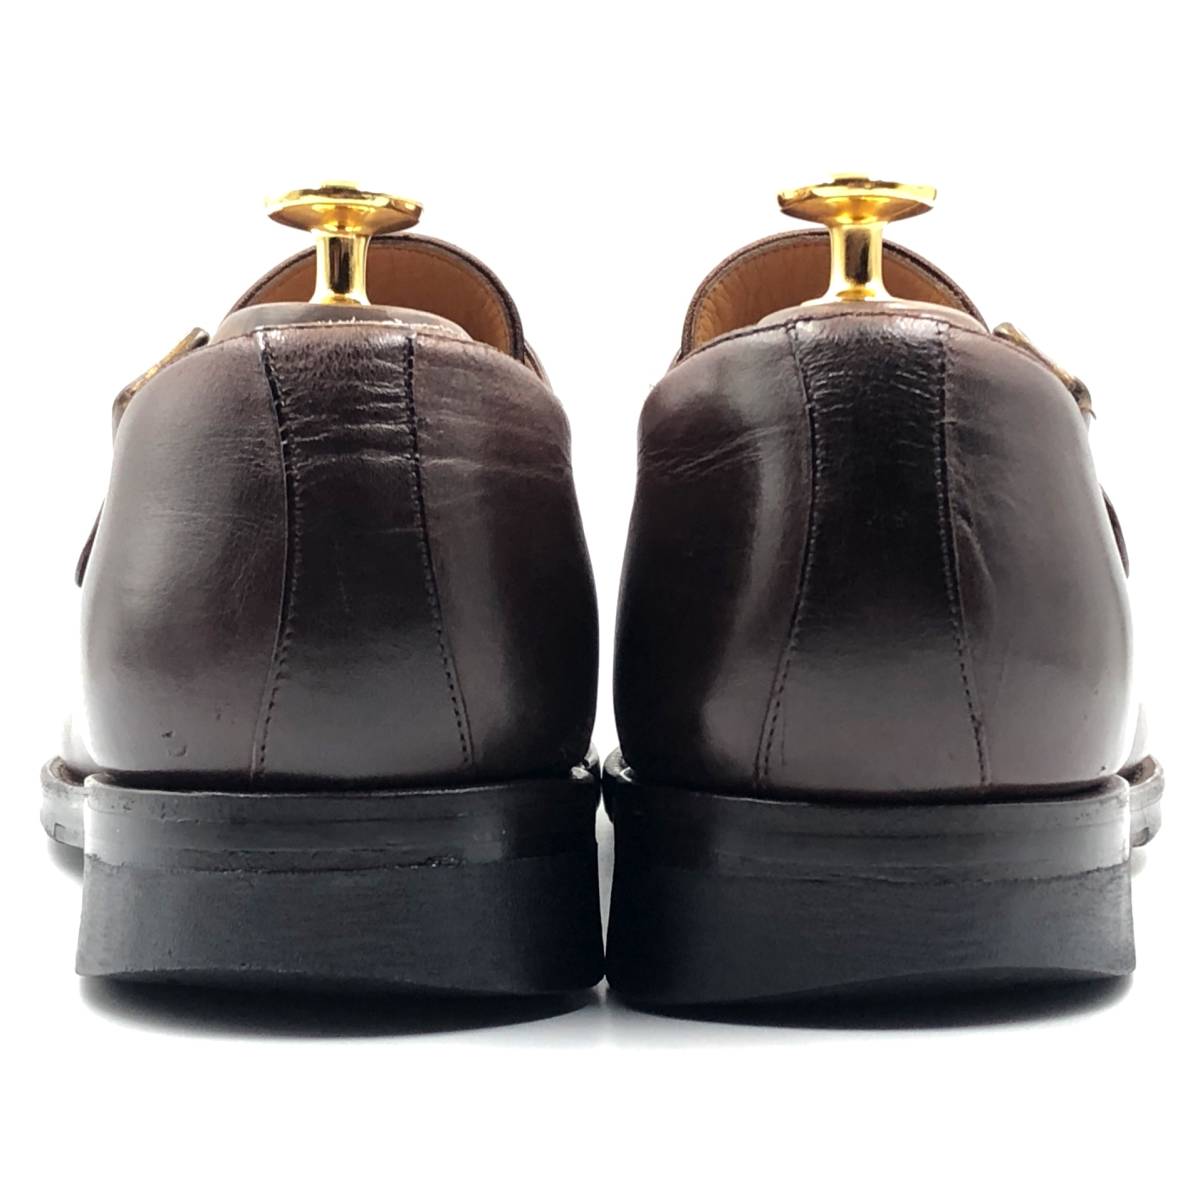 即決 YANKO ヤンコ 25.5cm 7.5 36861 メンズ レザーシューズ モンクストラップ 茶 ブラウン 革靴 皮靴 ビジネスシューズ_画像4